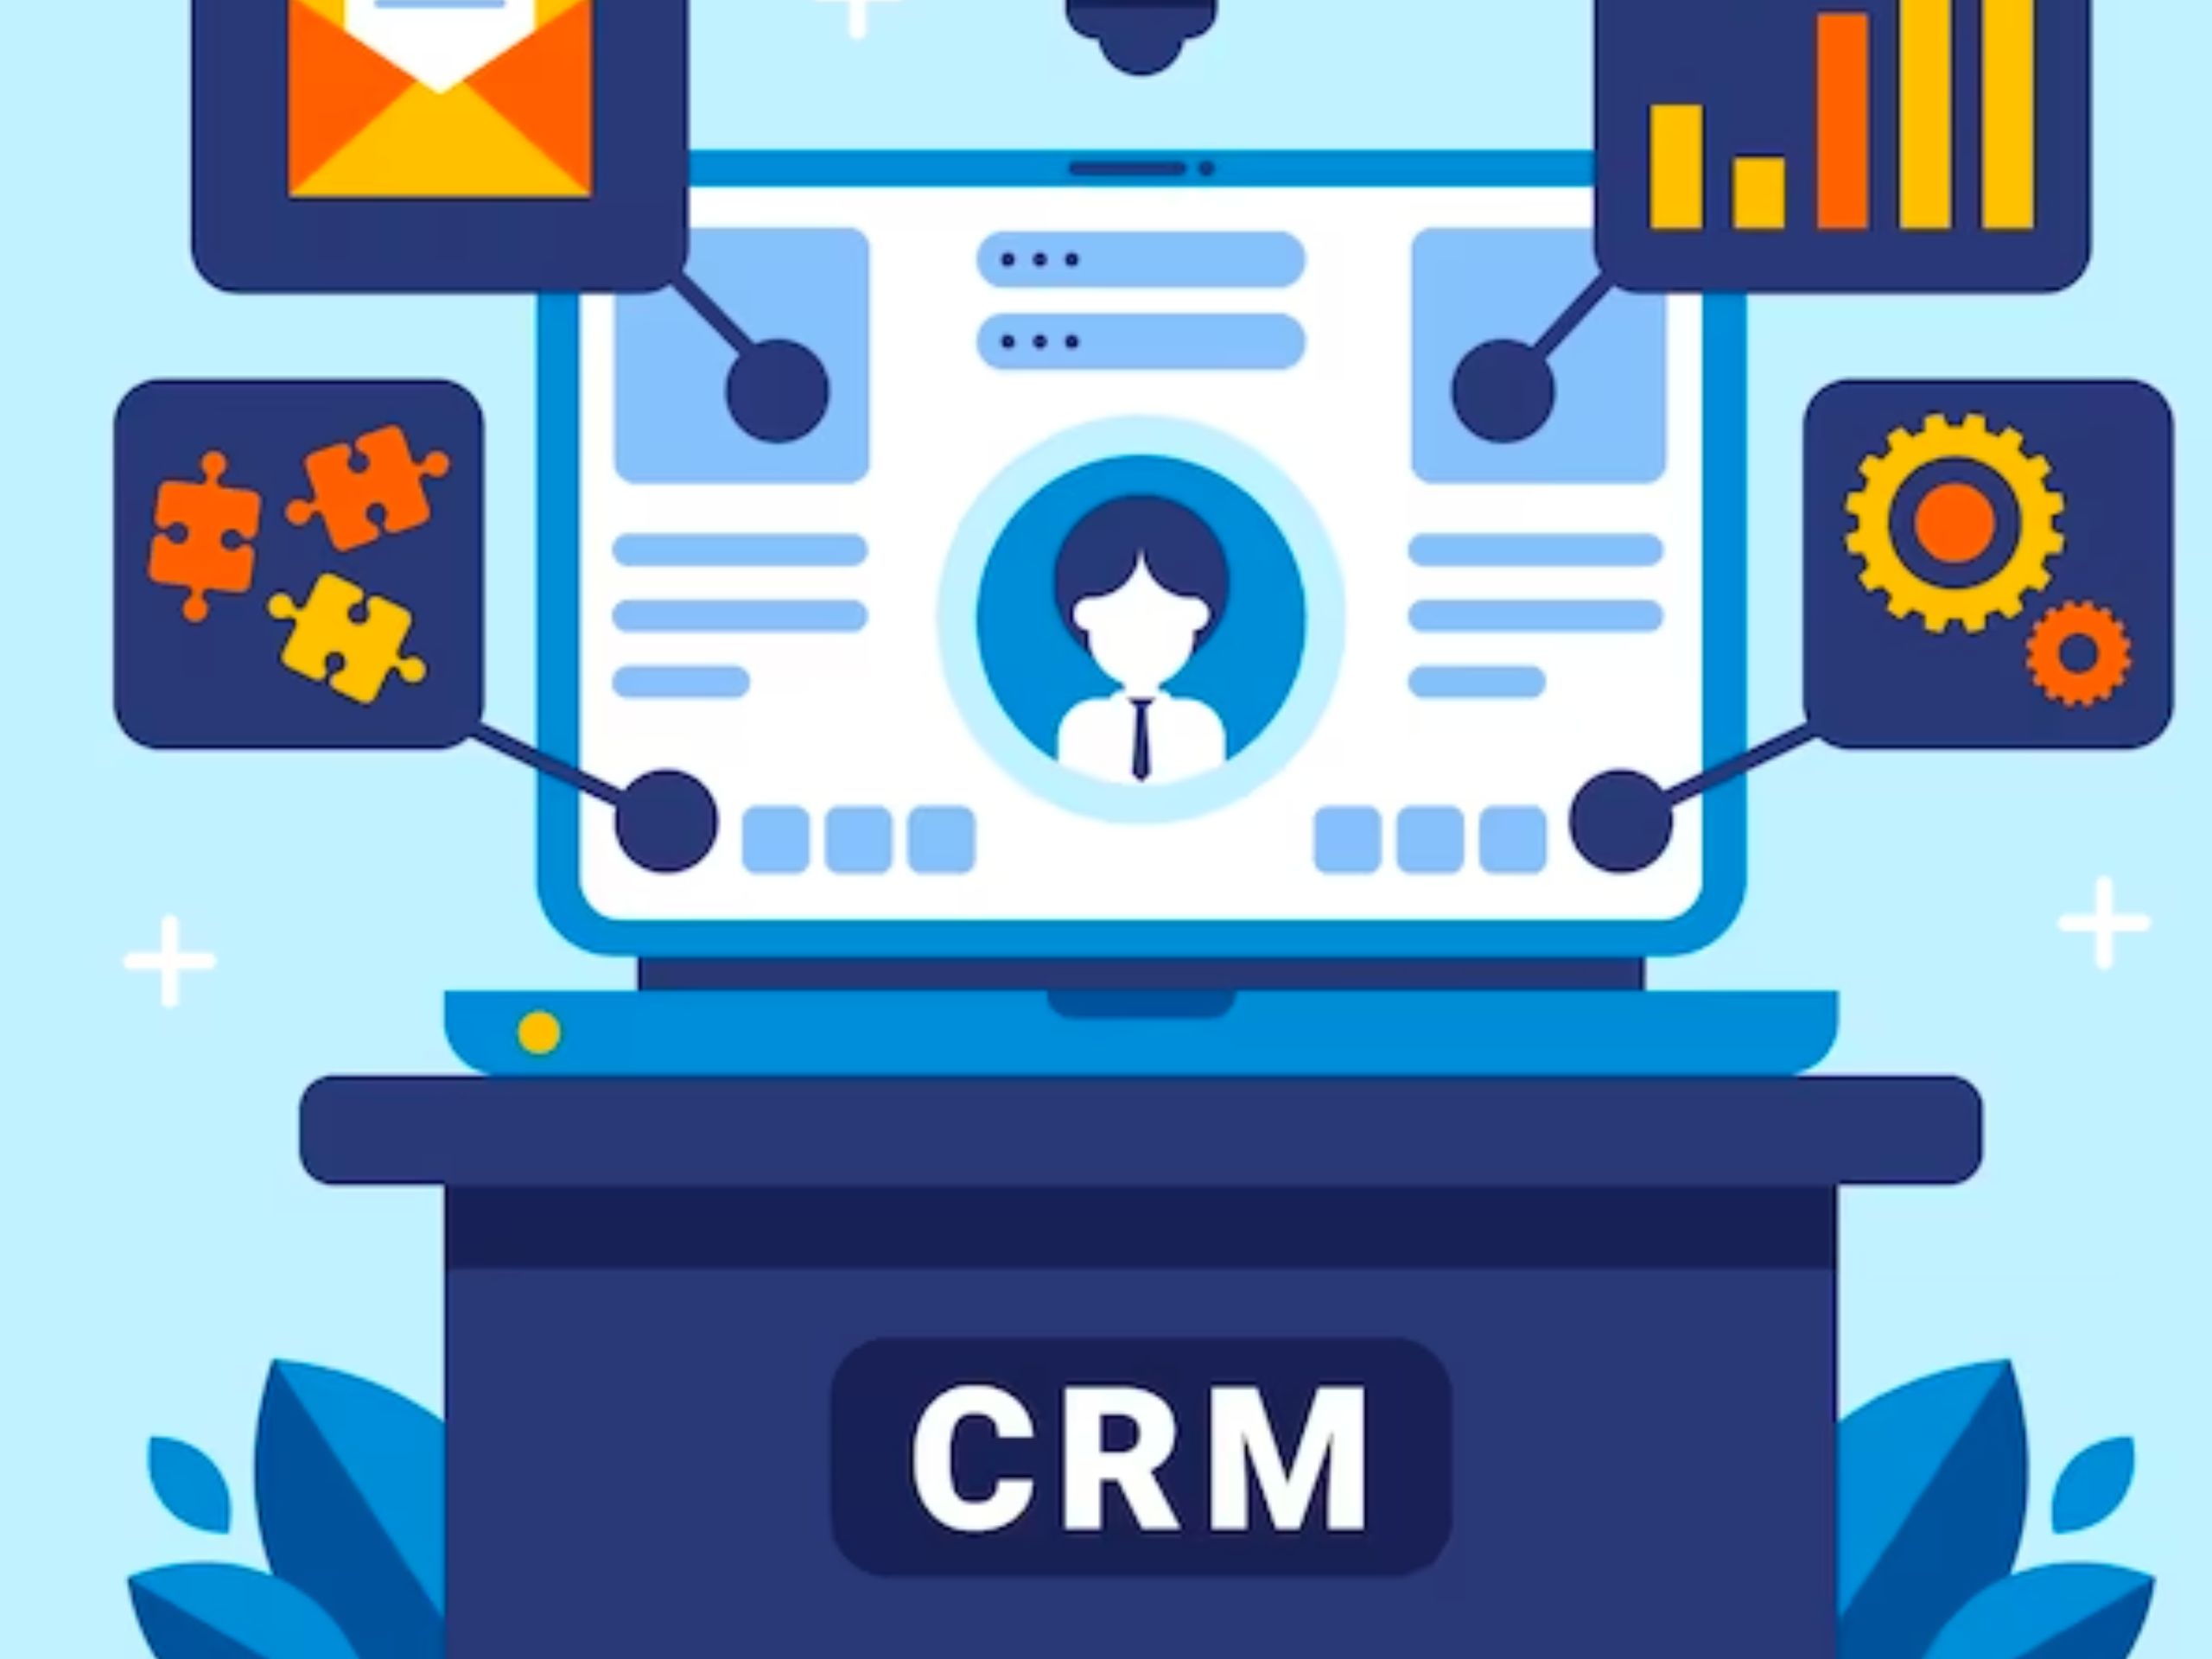 Giải pháp quản lý khách hàng hiệu quả bằng phần mềm CRM